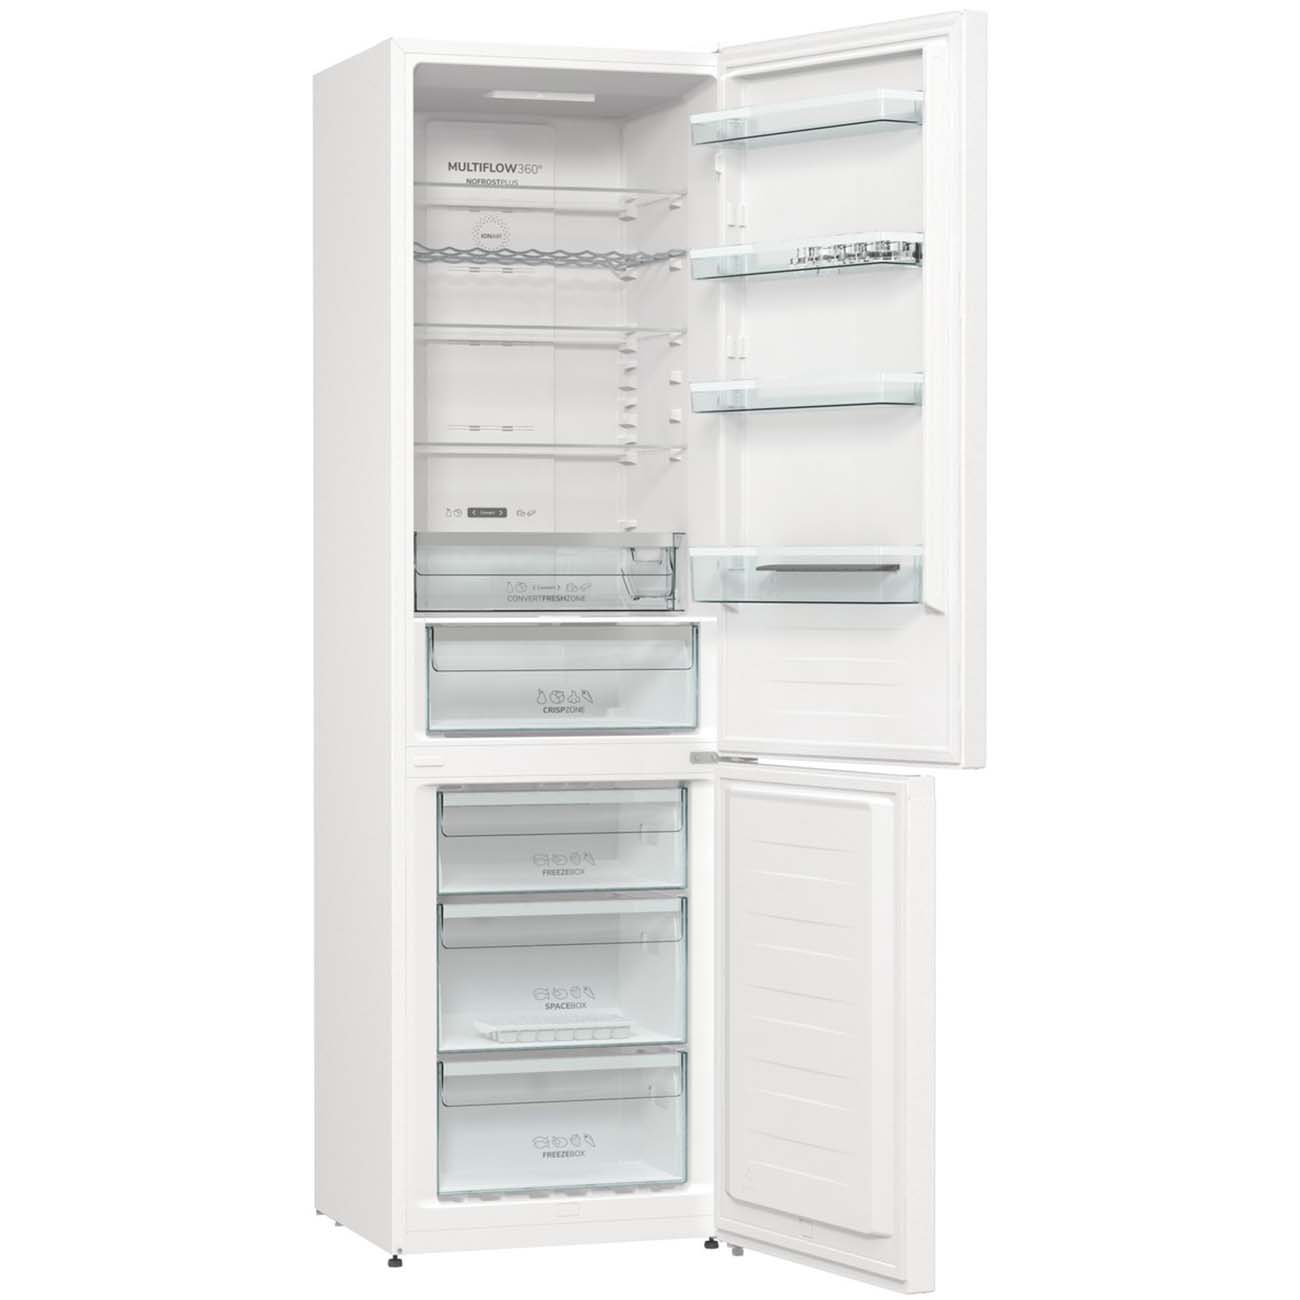 Холодильник Gorenje NRK6202EW4